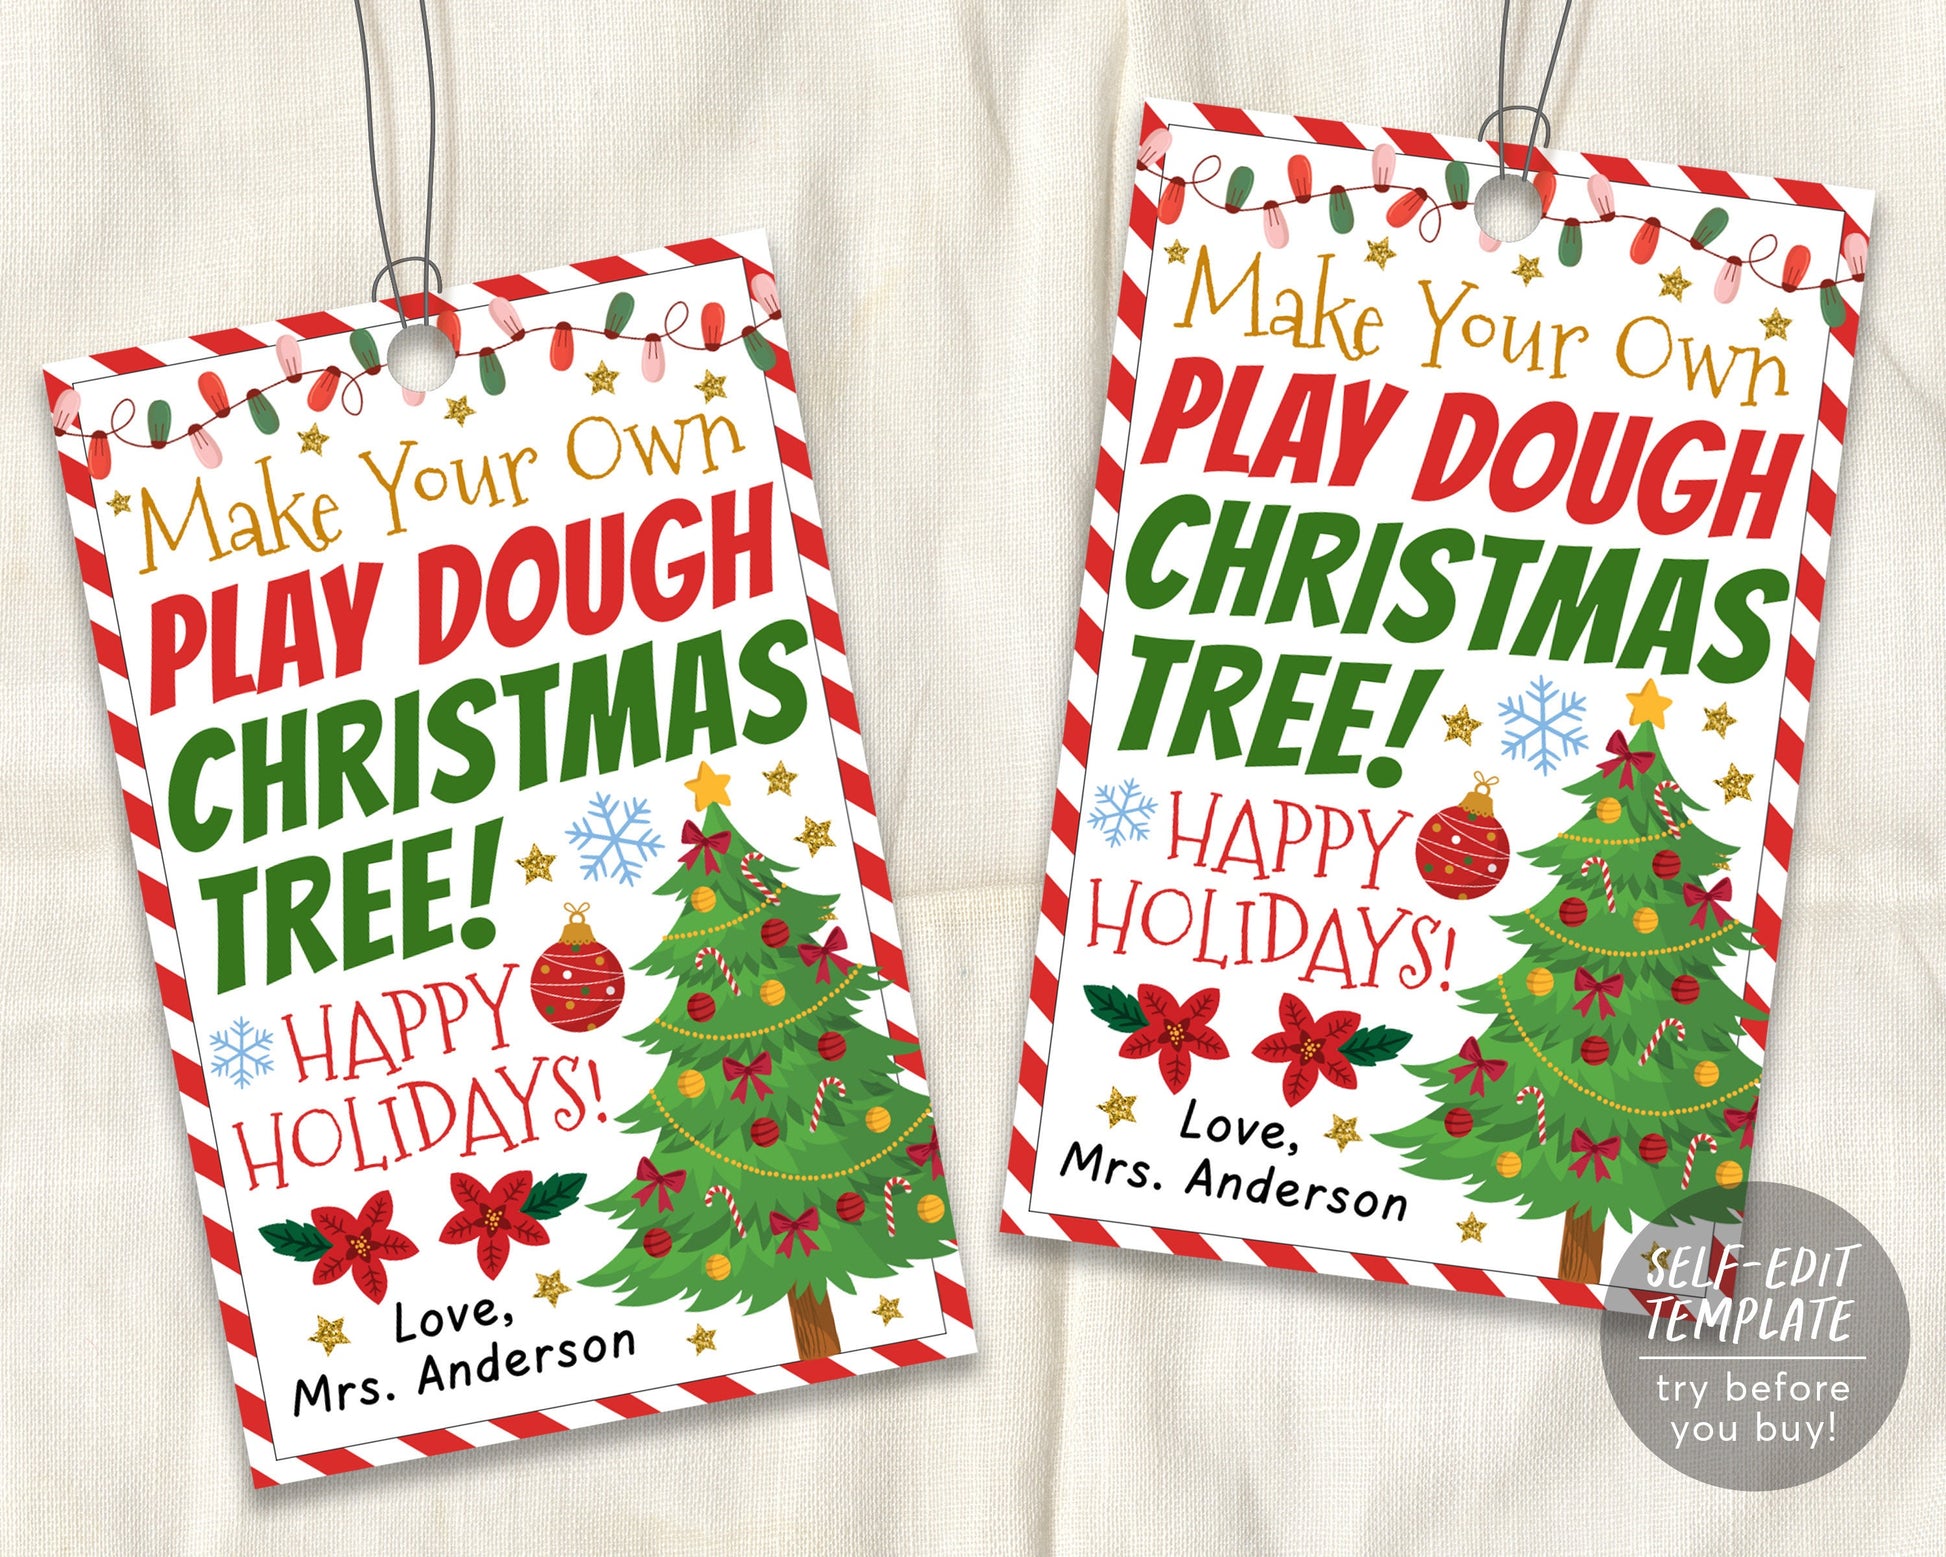 Christmas Gift Tags, Printable kids Gift Tags